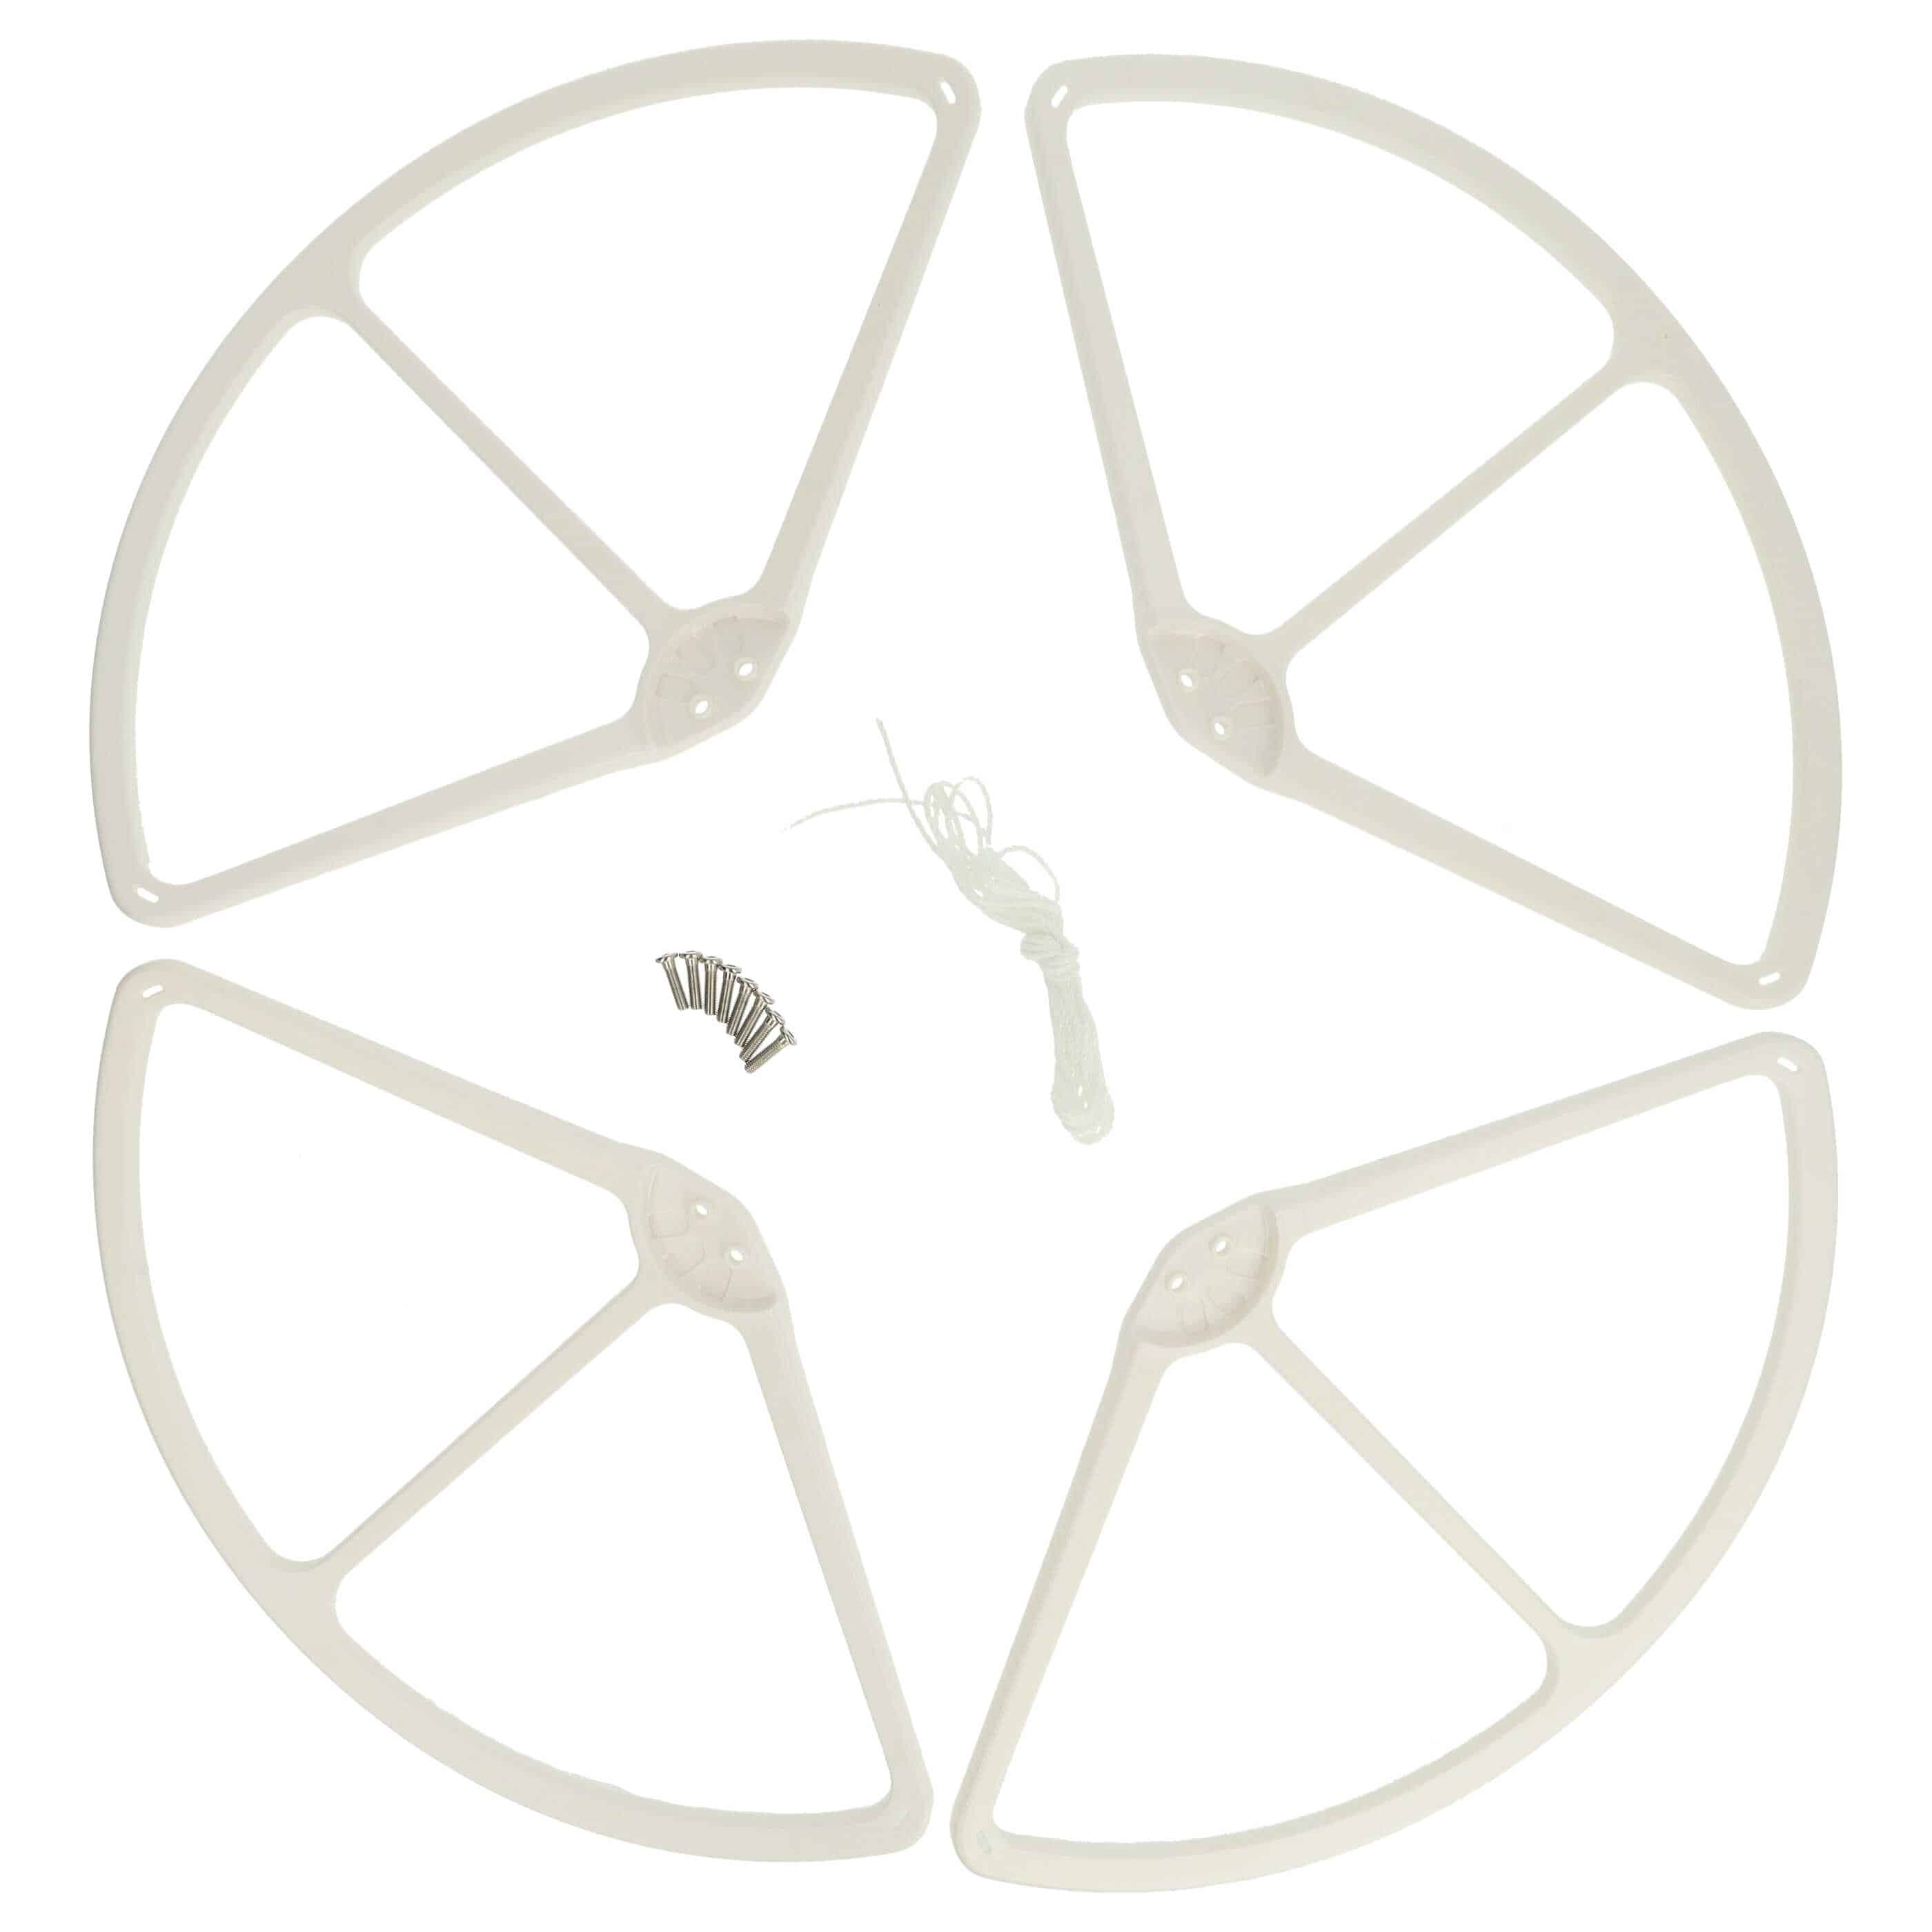 4x Propeller Protector for DJI Phantom Drohne etc. - white